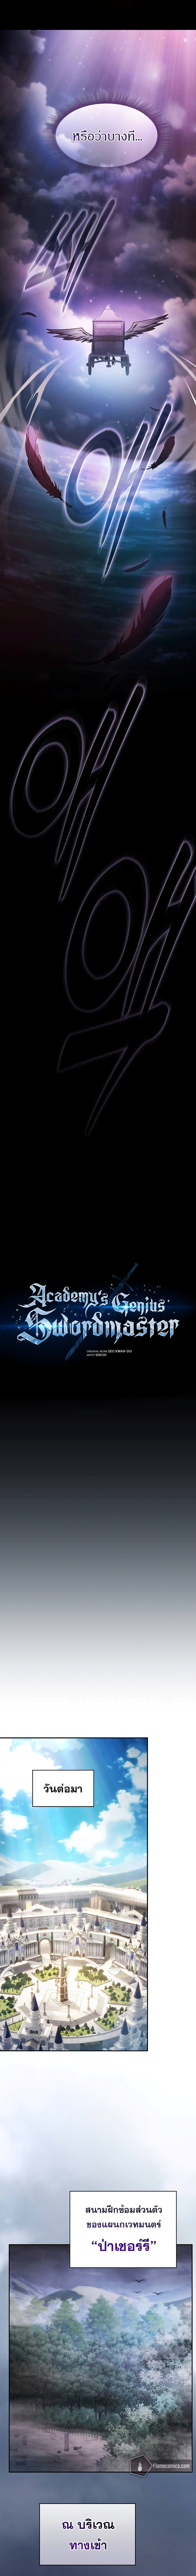 academys genius swordmaster 31 (4)